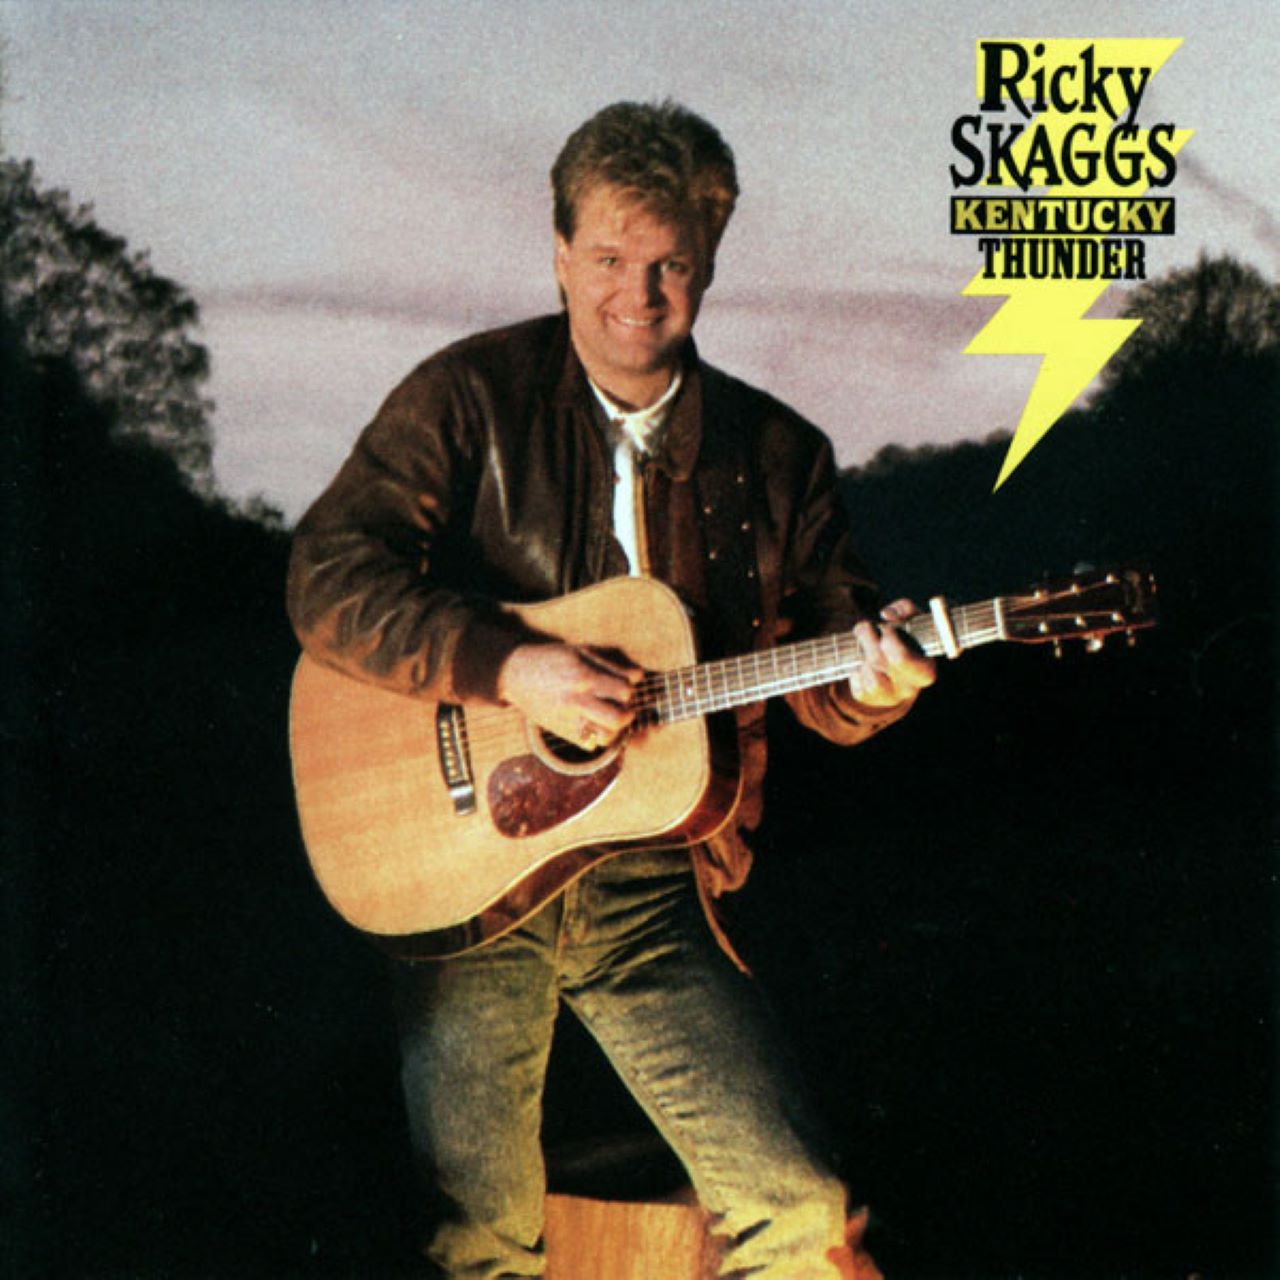 Ricky Skaggs - Kentucky Thunder cover album